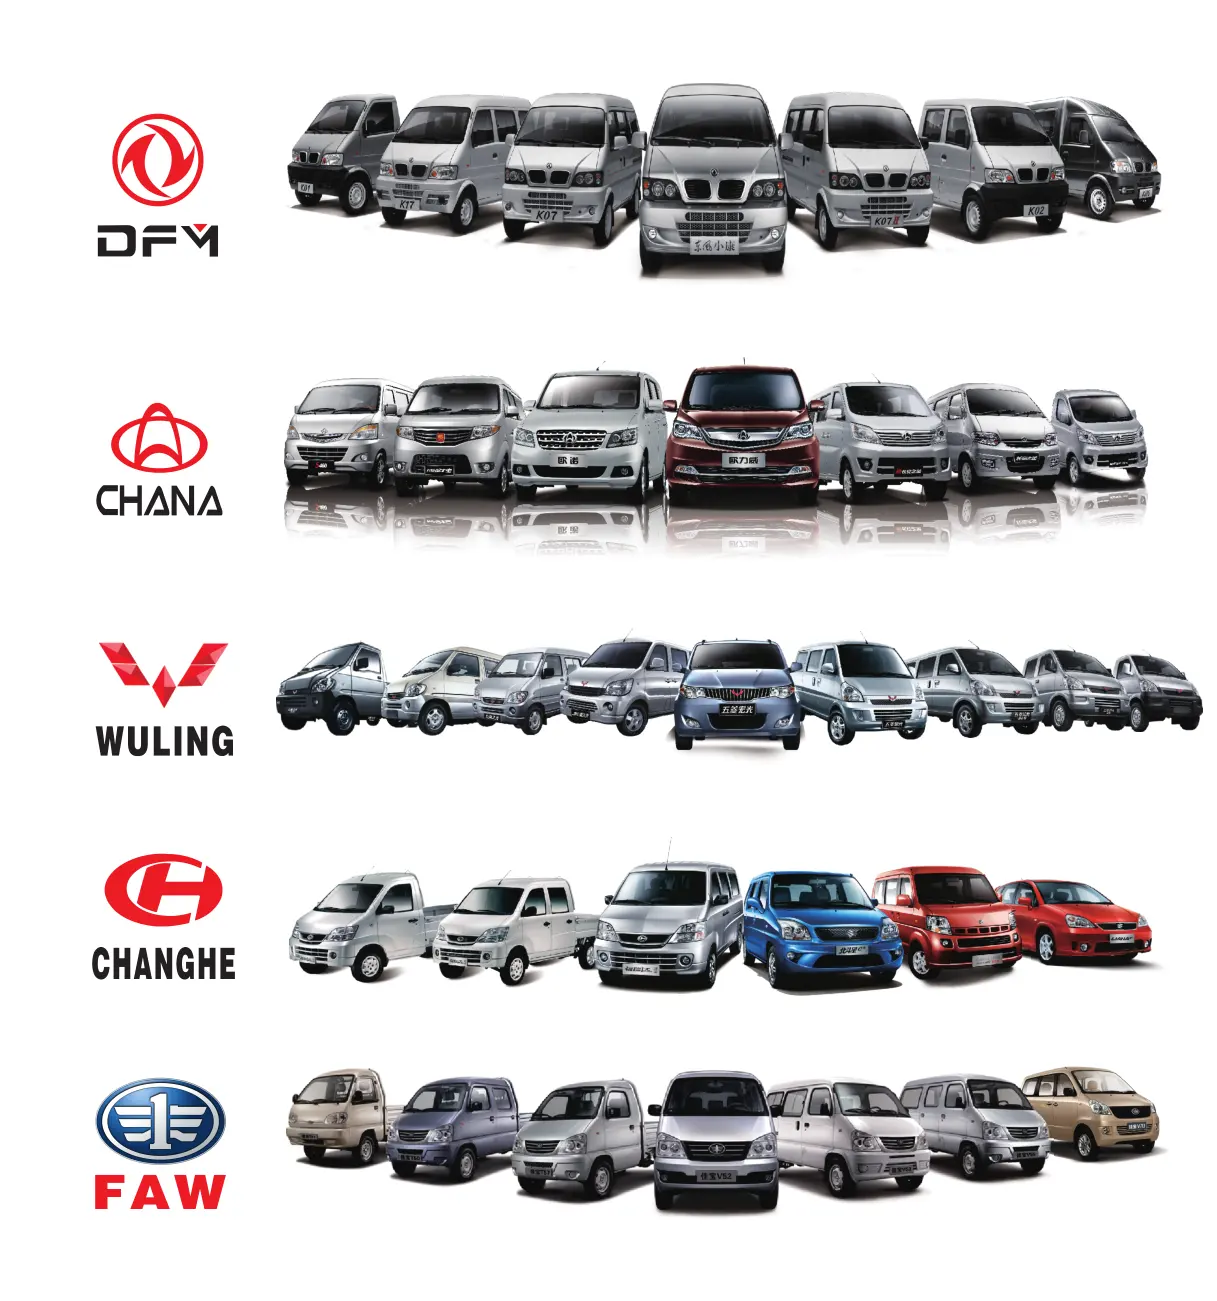 LIFAN-piezas de repuesto para coche, accesorio para automóvil DFM, EQ465i, OEM, ODM, chino, en el mercado de Panamá, Turquía, Ghana